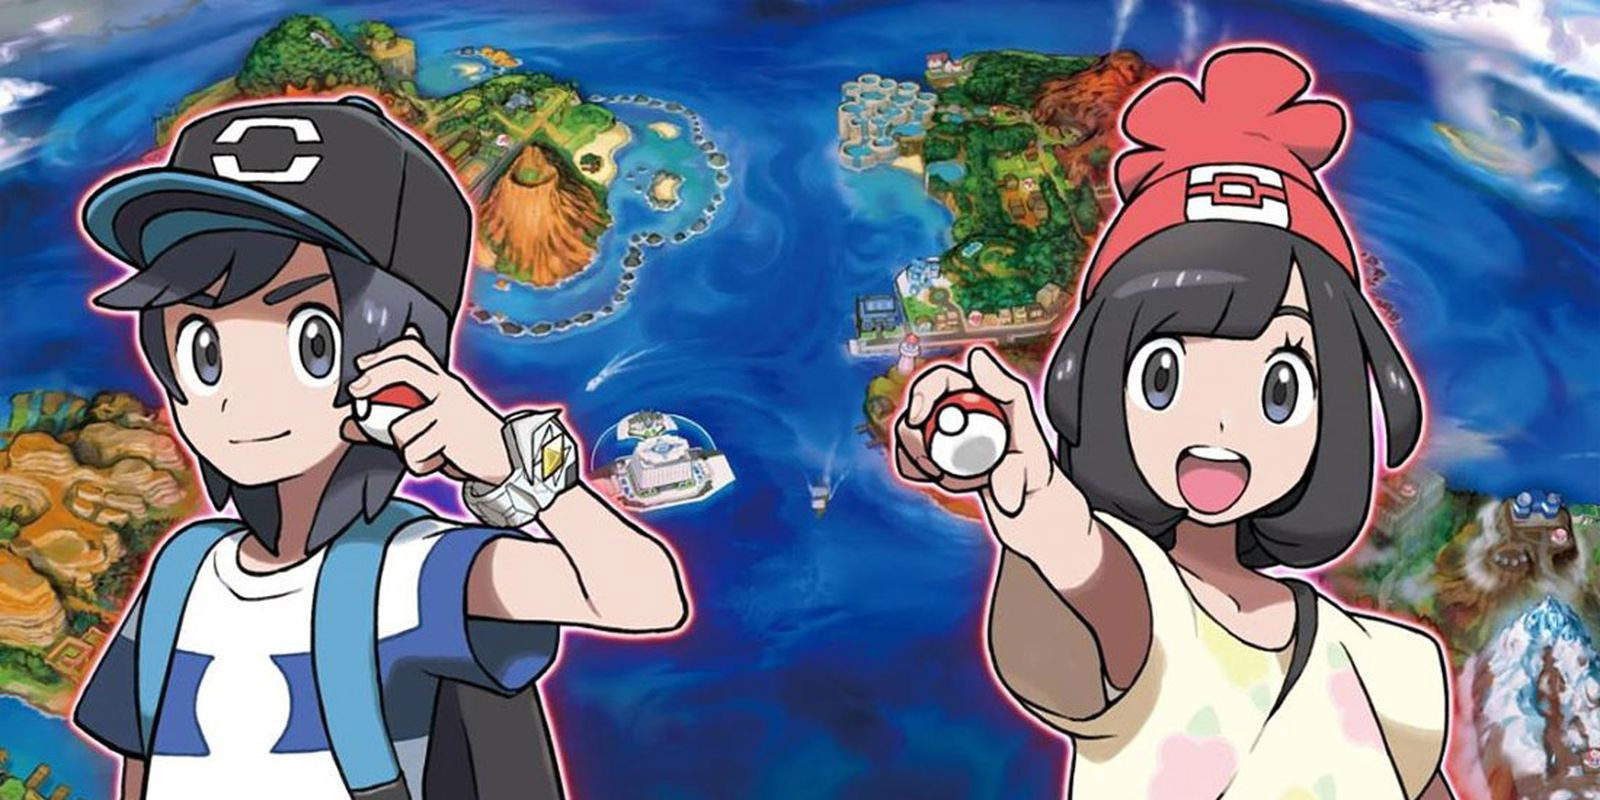 'Pokémon Sol y Luna': sexta misión global superada con éxito